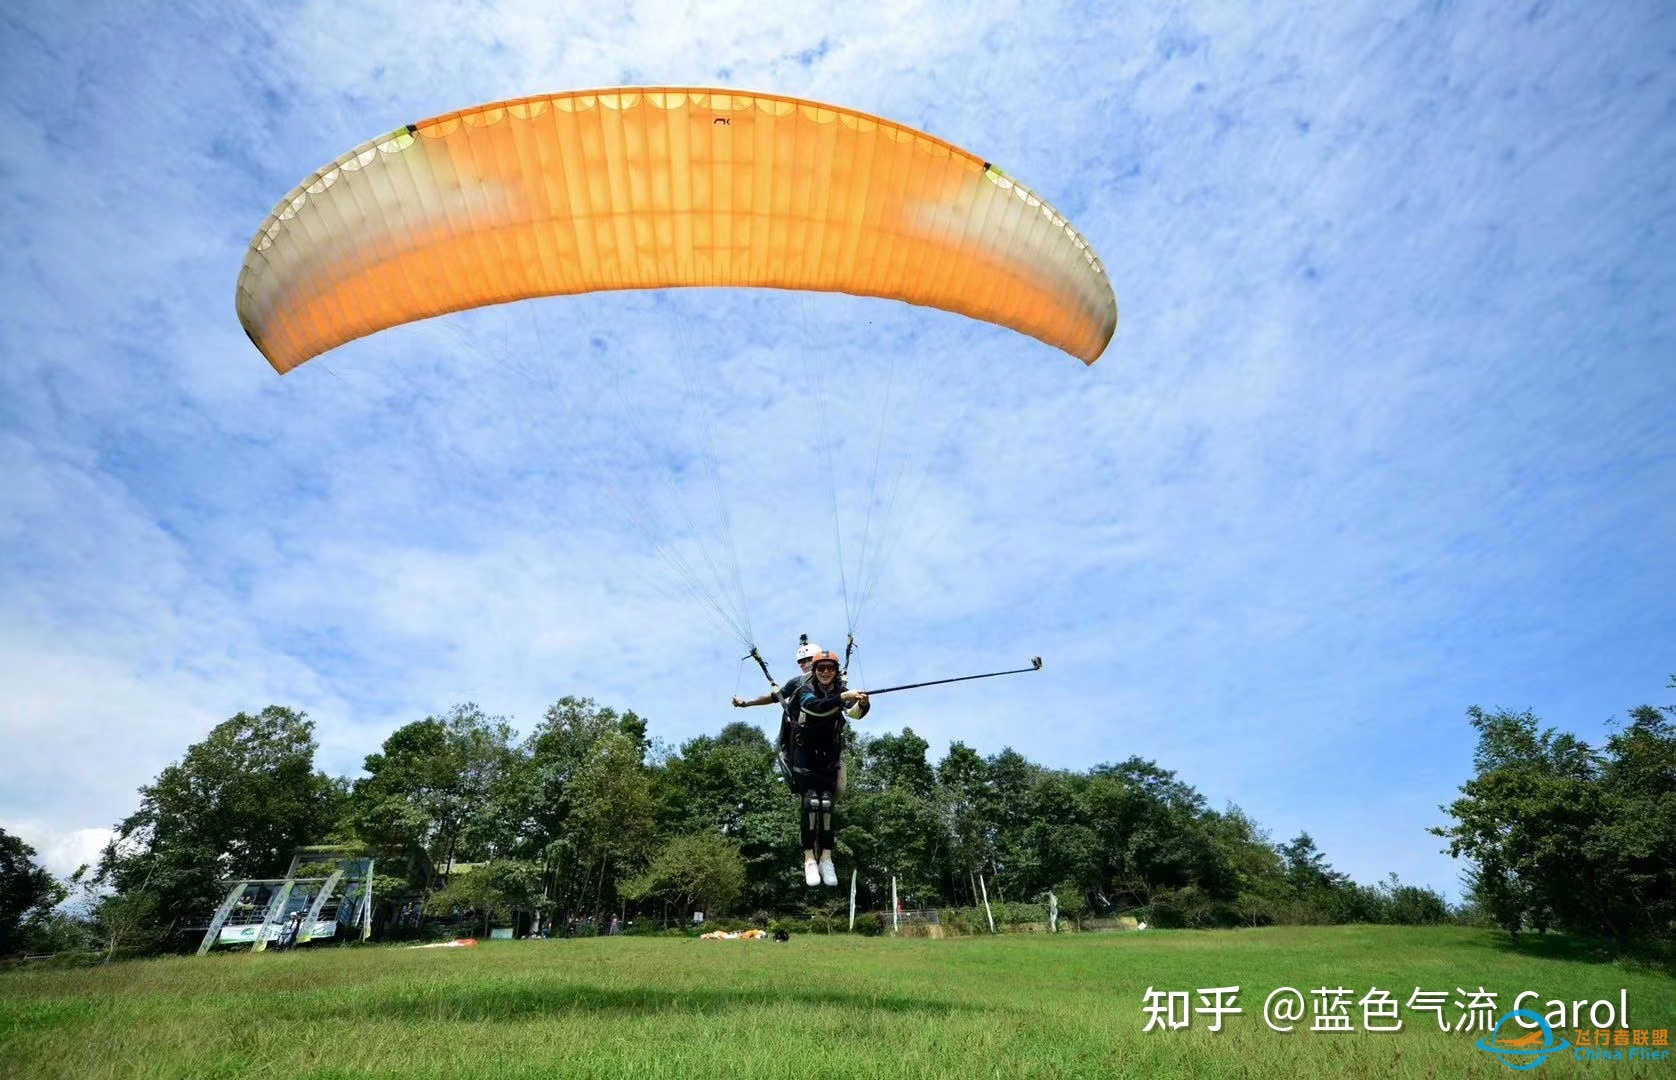 双人滑翔伞带飞体验-4095 